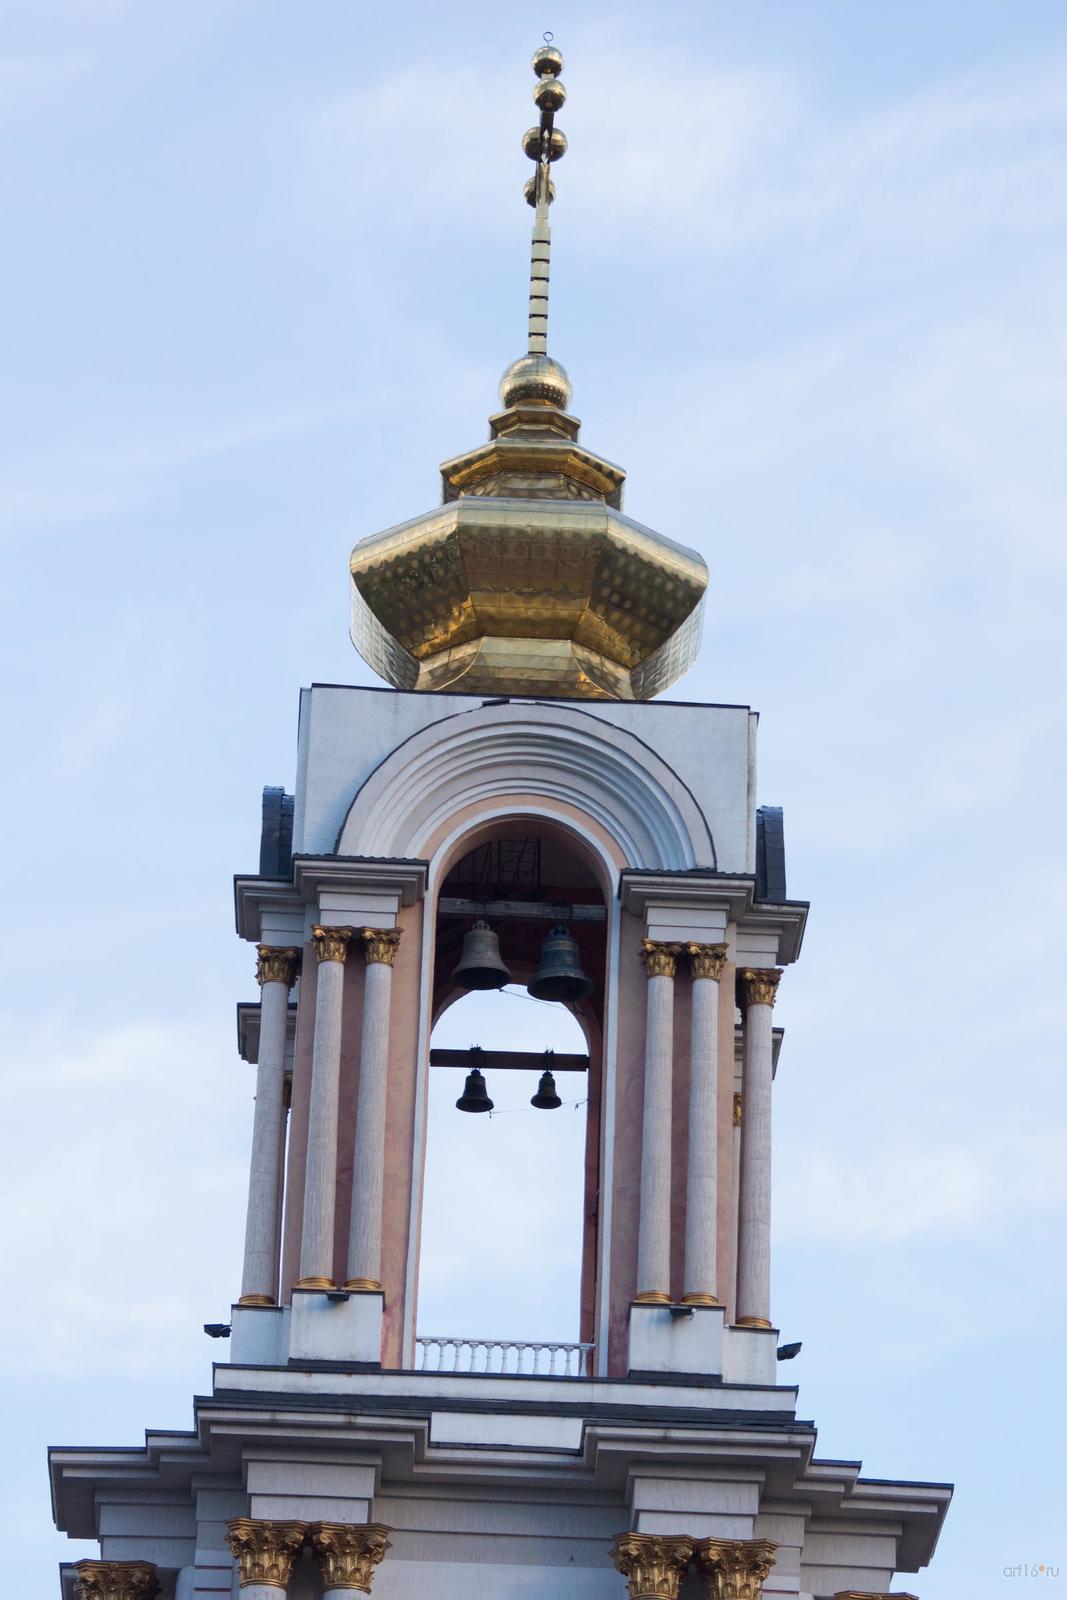 Фото №829029. Трёхъярусный храм-колокольня святого Георгия Победоносца (третий ярус)